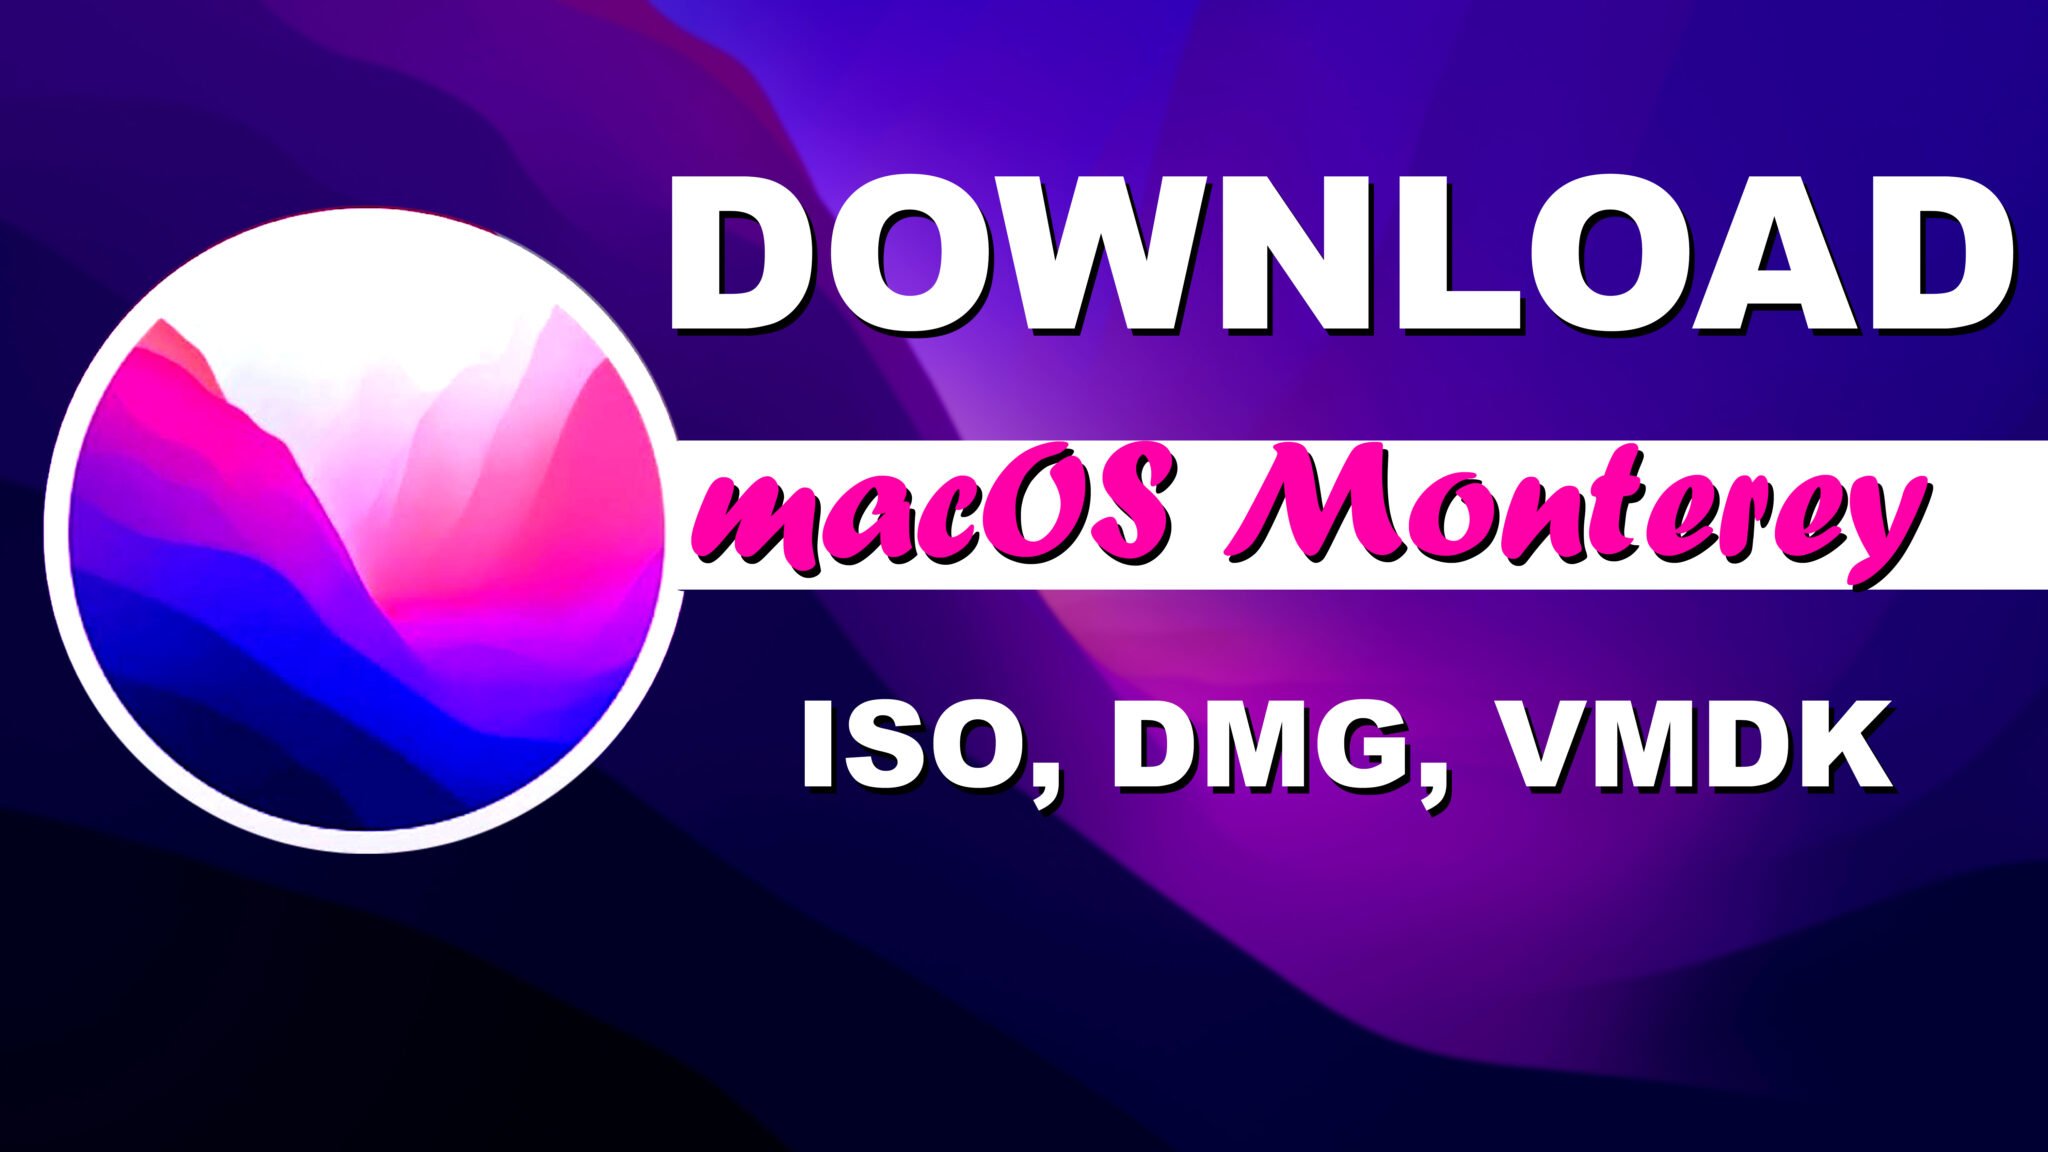 macos monterey 12.1 release date